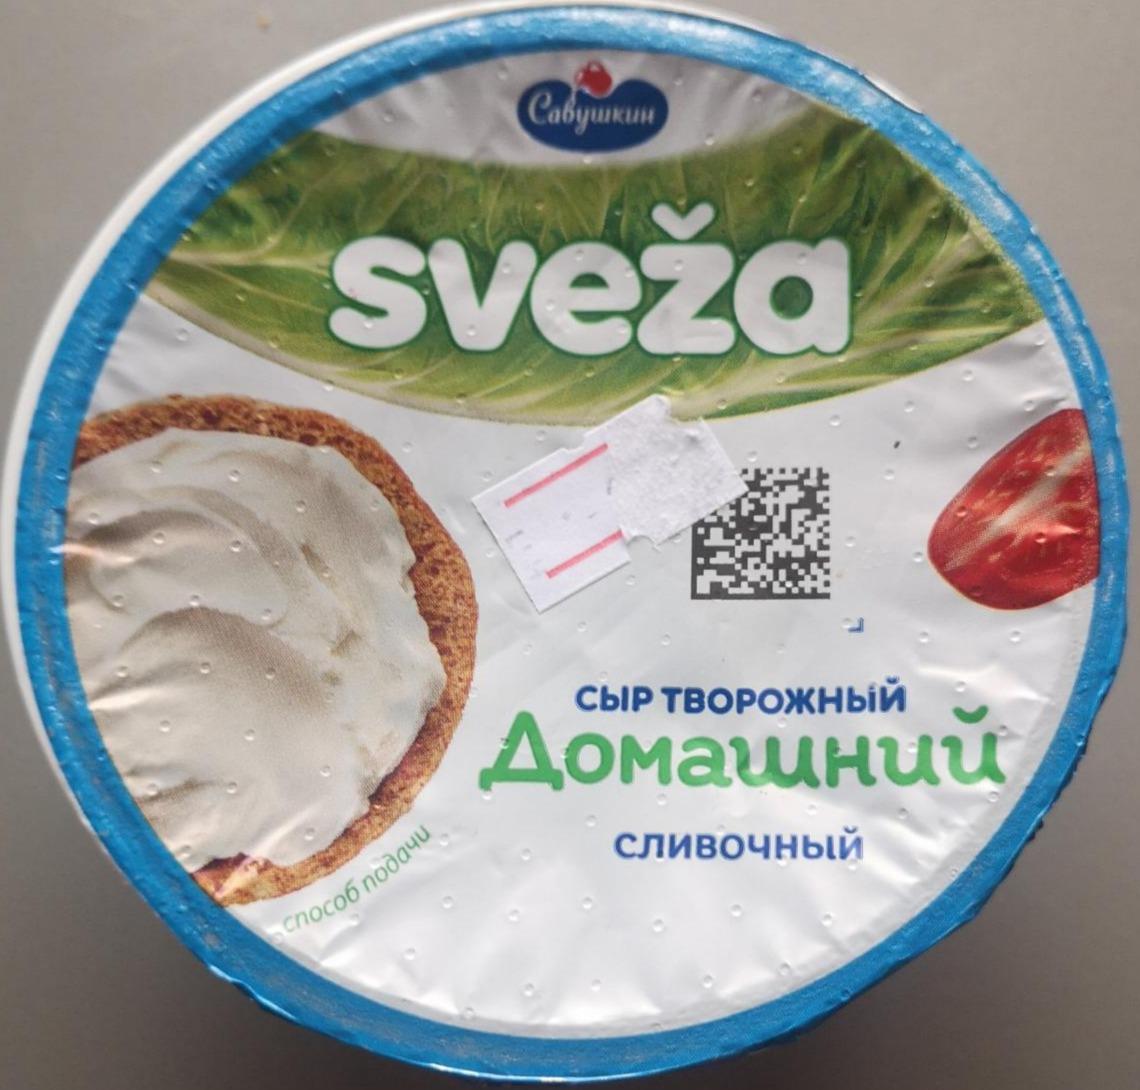 Фото - Сыр творожный домашний сливочный Sveža Савушкин